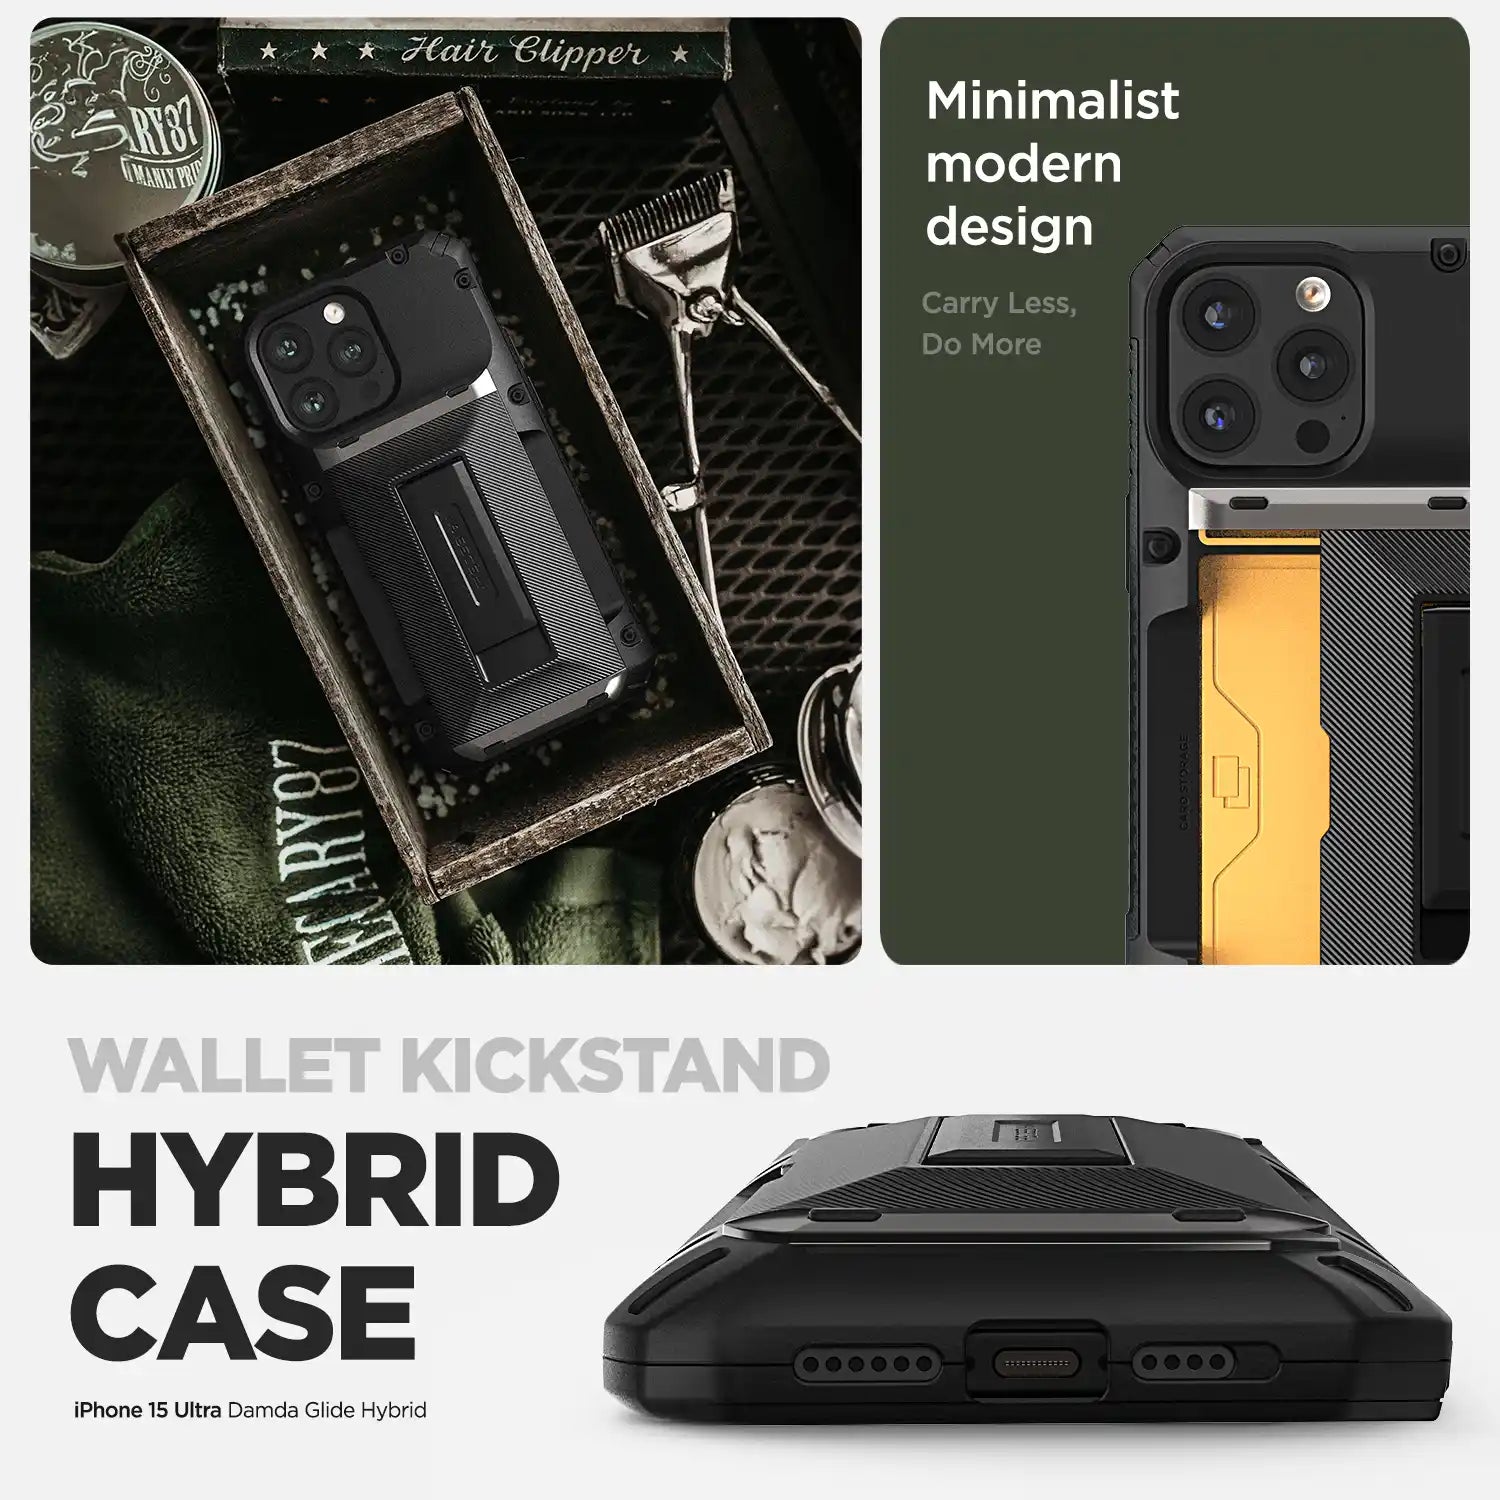 VRS Design Damda Glide Hybrid Case For iPhone 15 Series